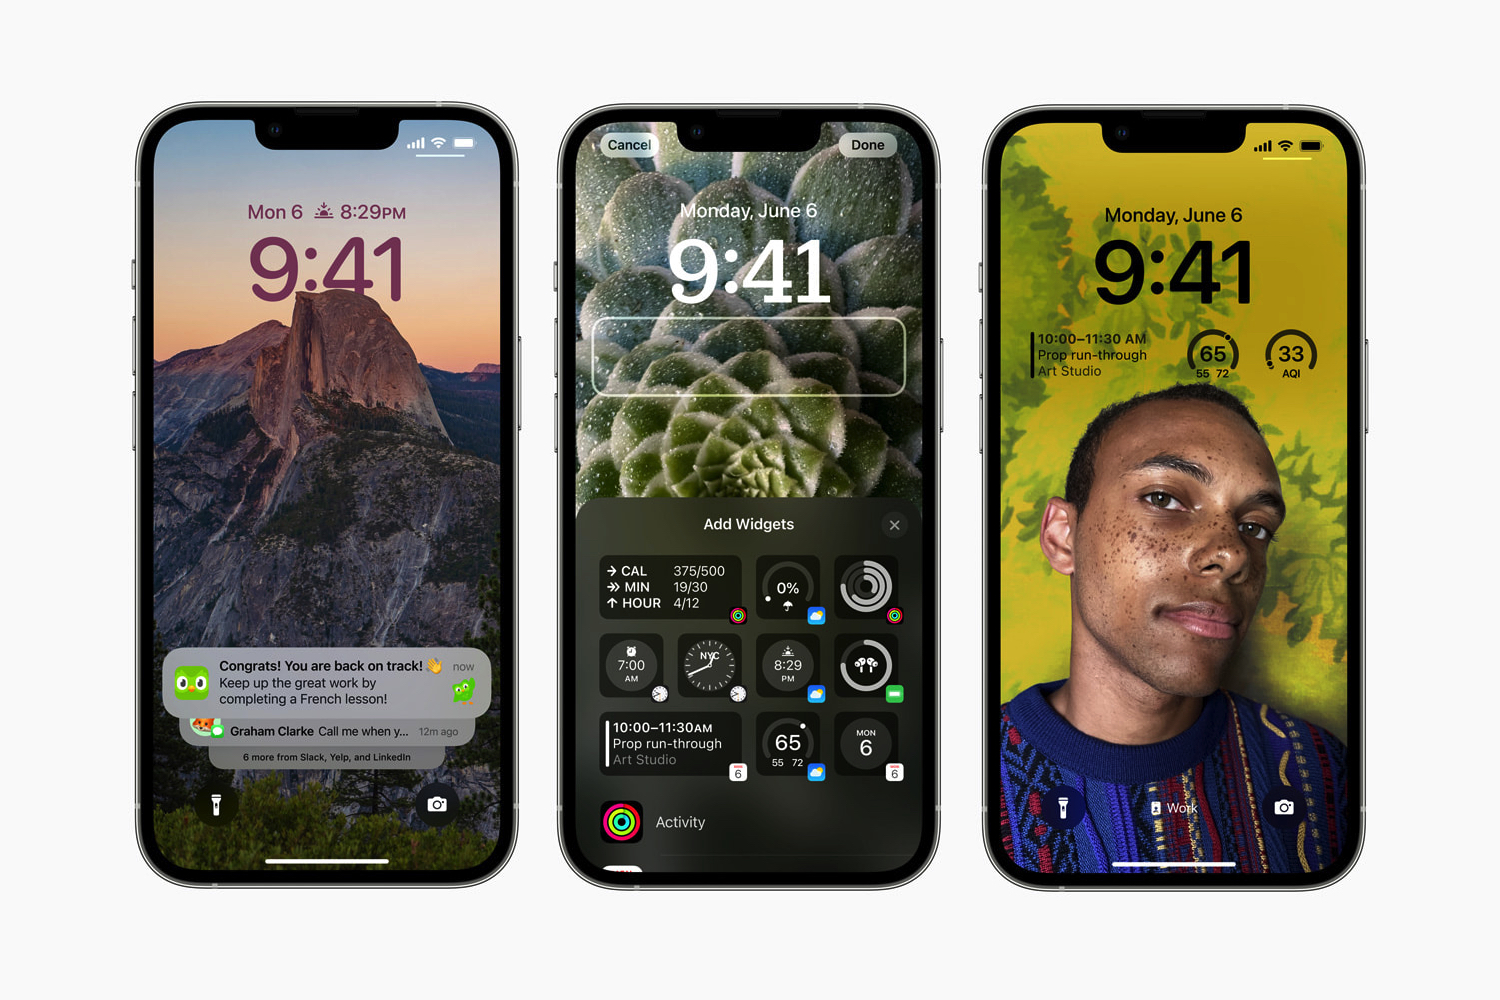 Smartphone Lock Screen Screensaver Wallpapers iPhone 